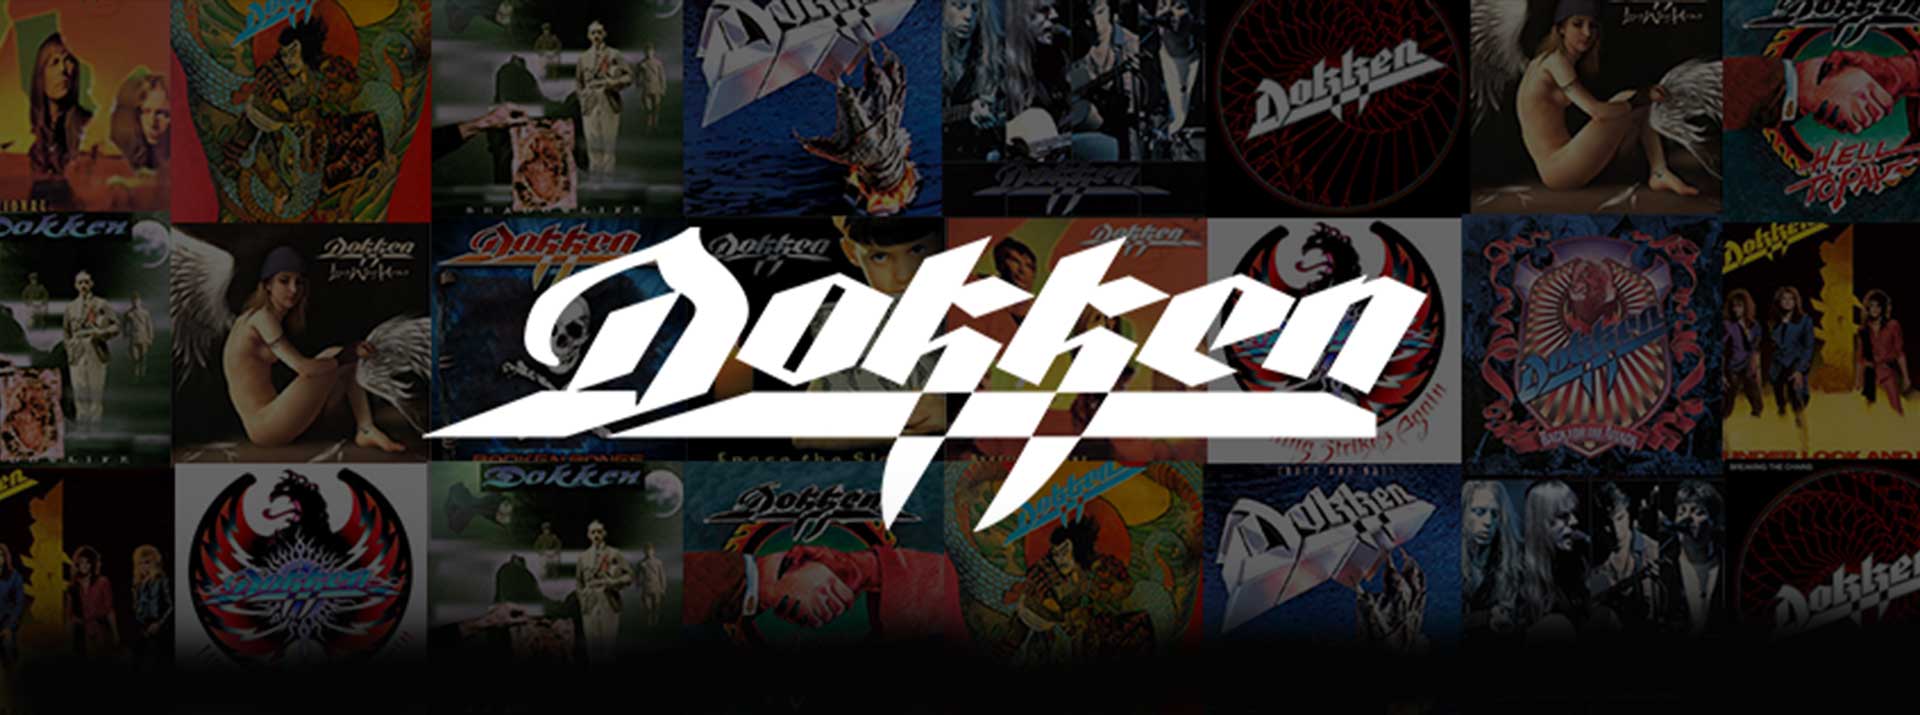 Dokken Logo - Official website for the rock band DOKKEN.